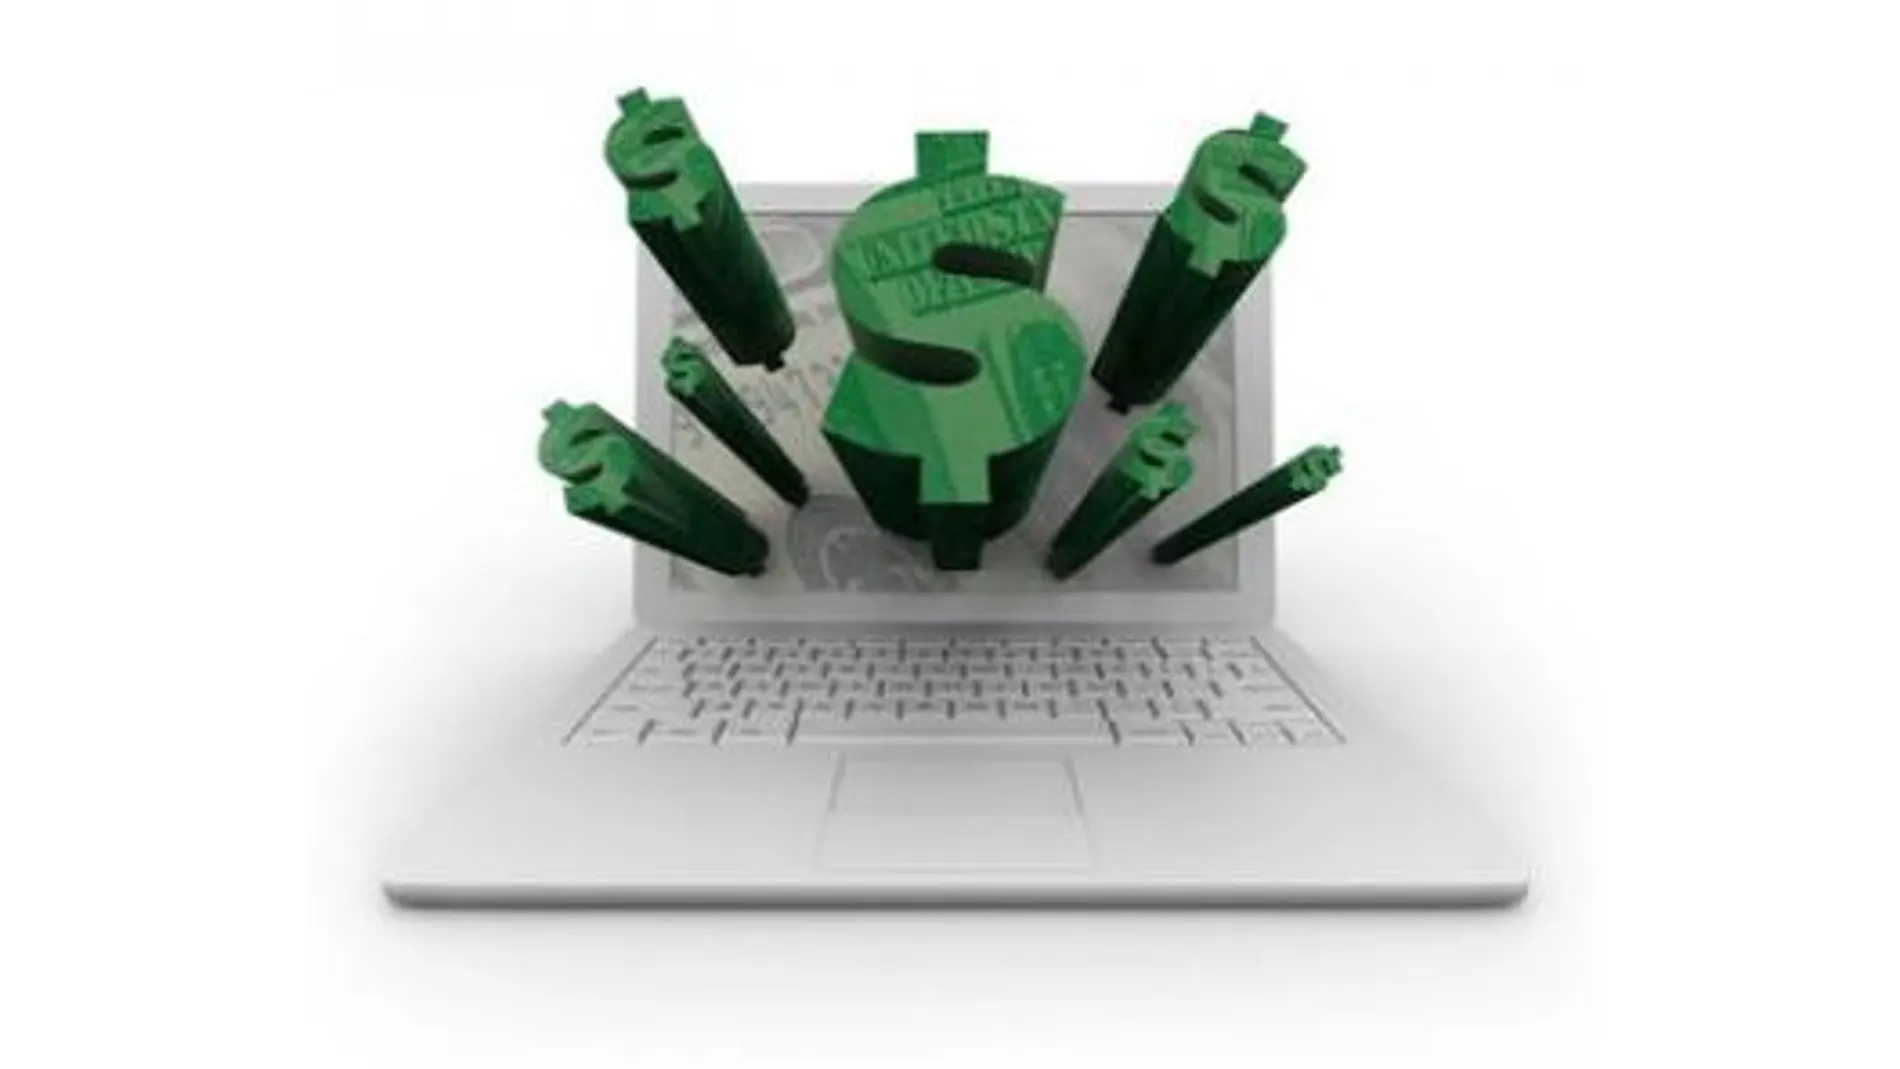 Préstamos rápidos Online, la mejor alternativa para obtener dinero rápido